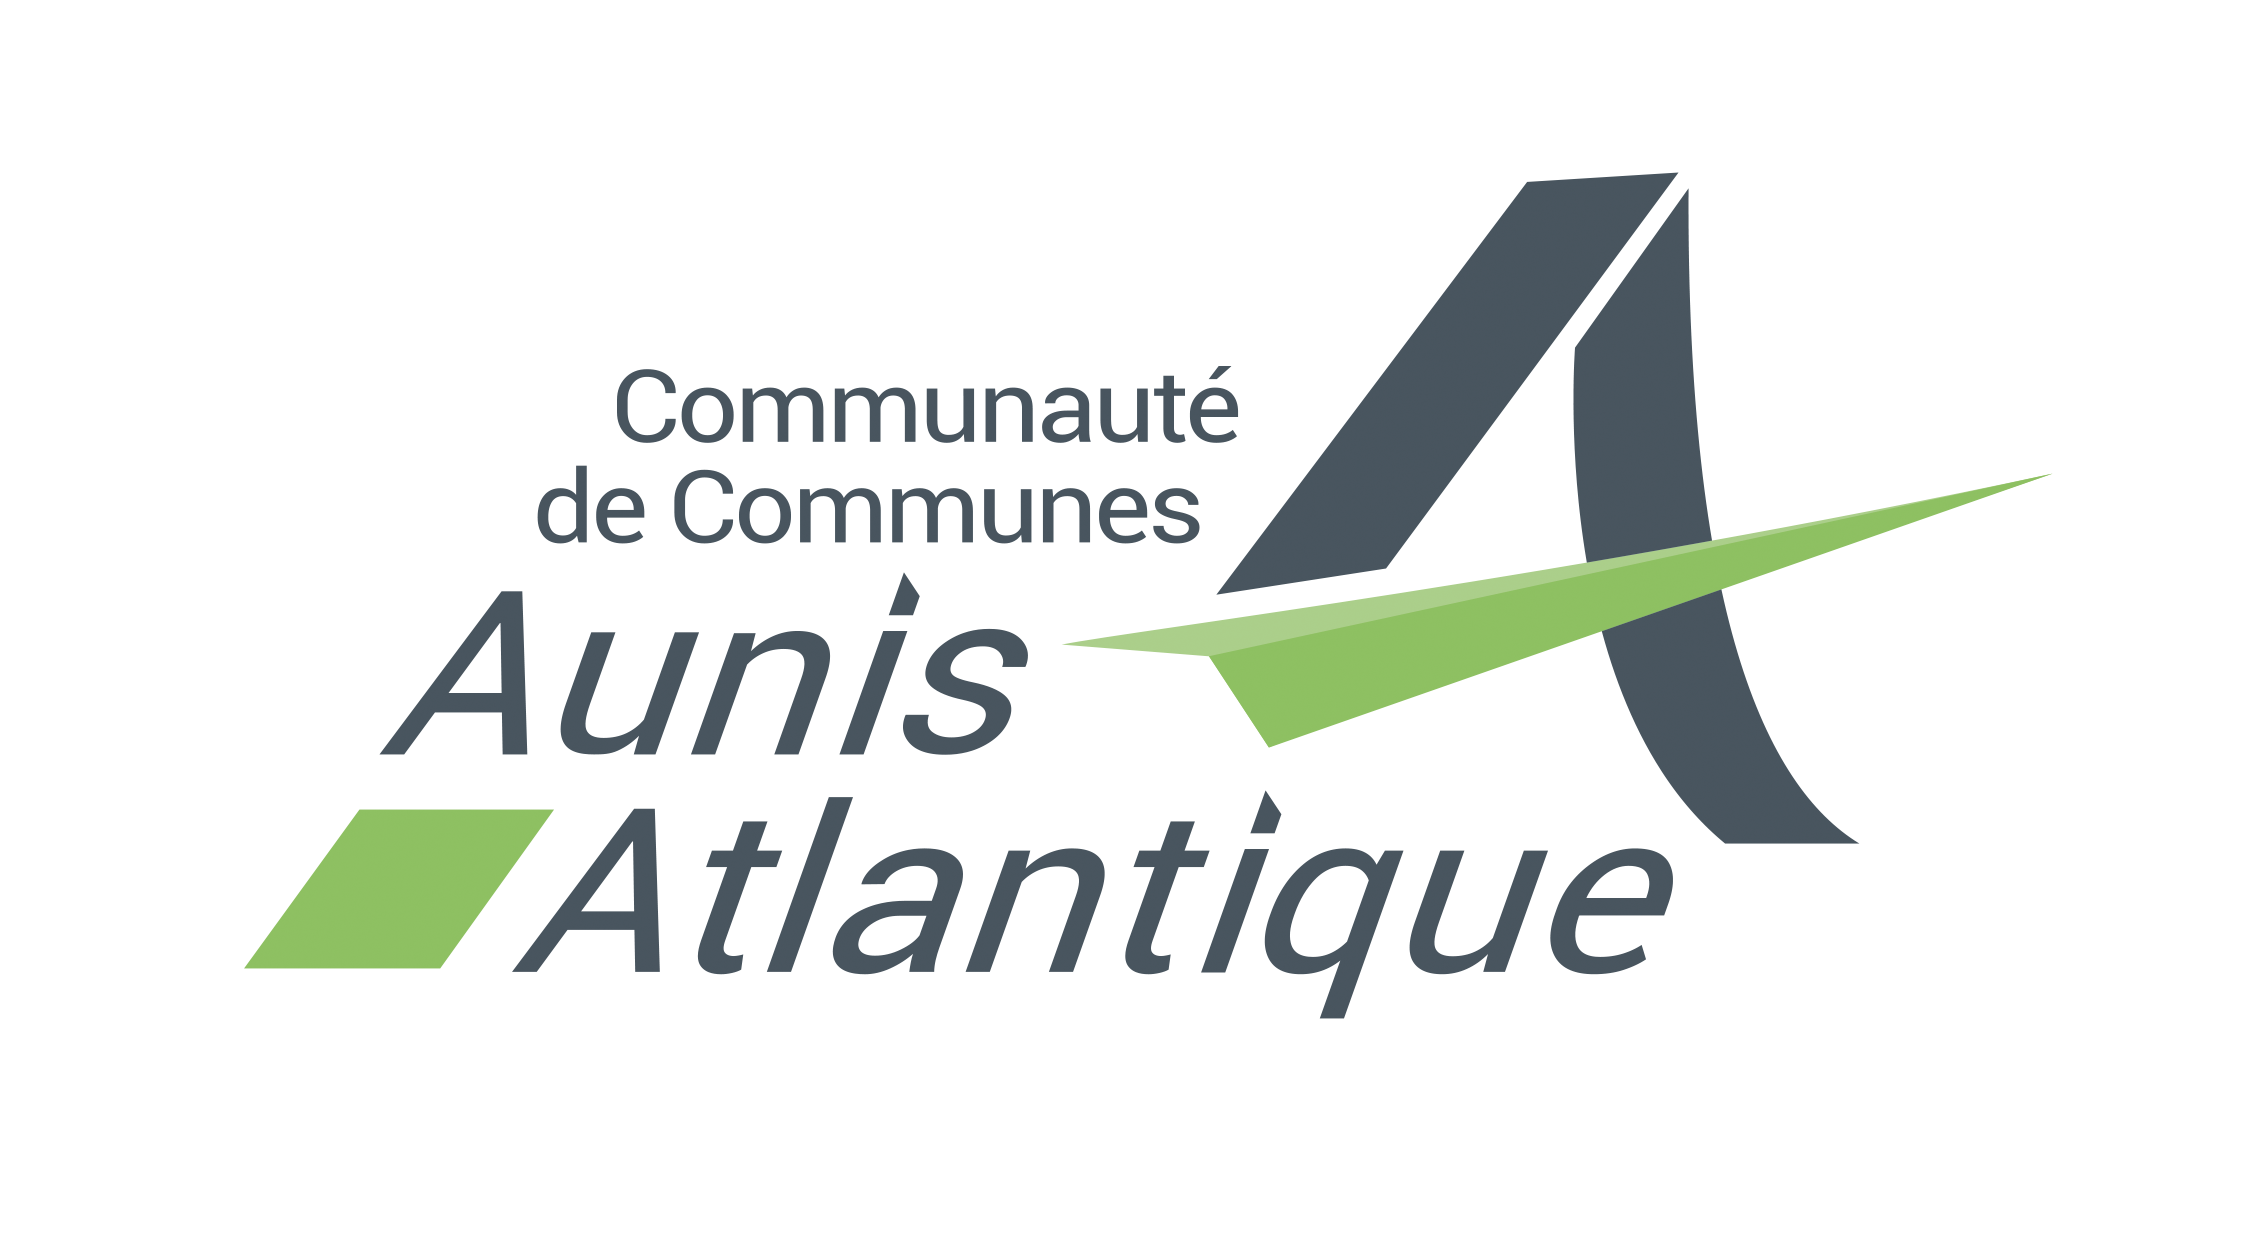 Aunis atlantique